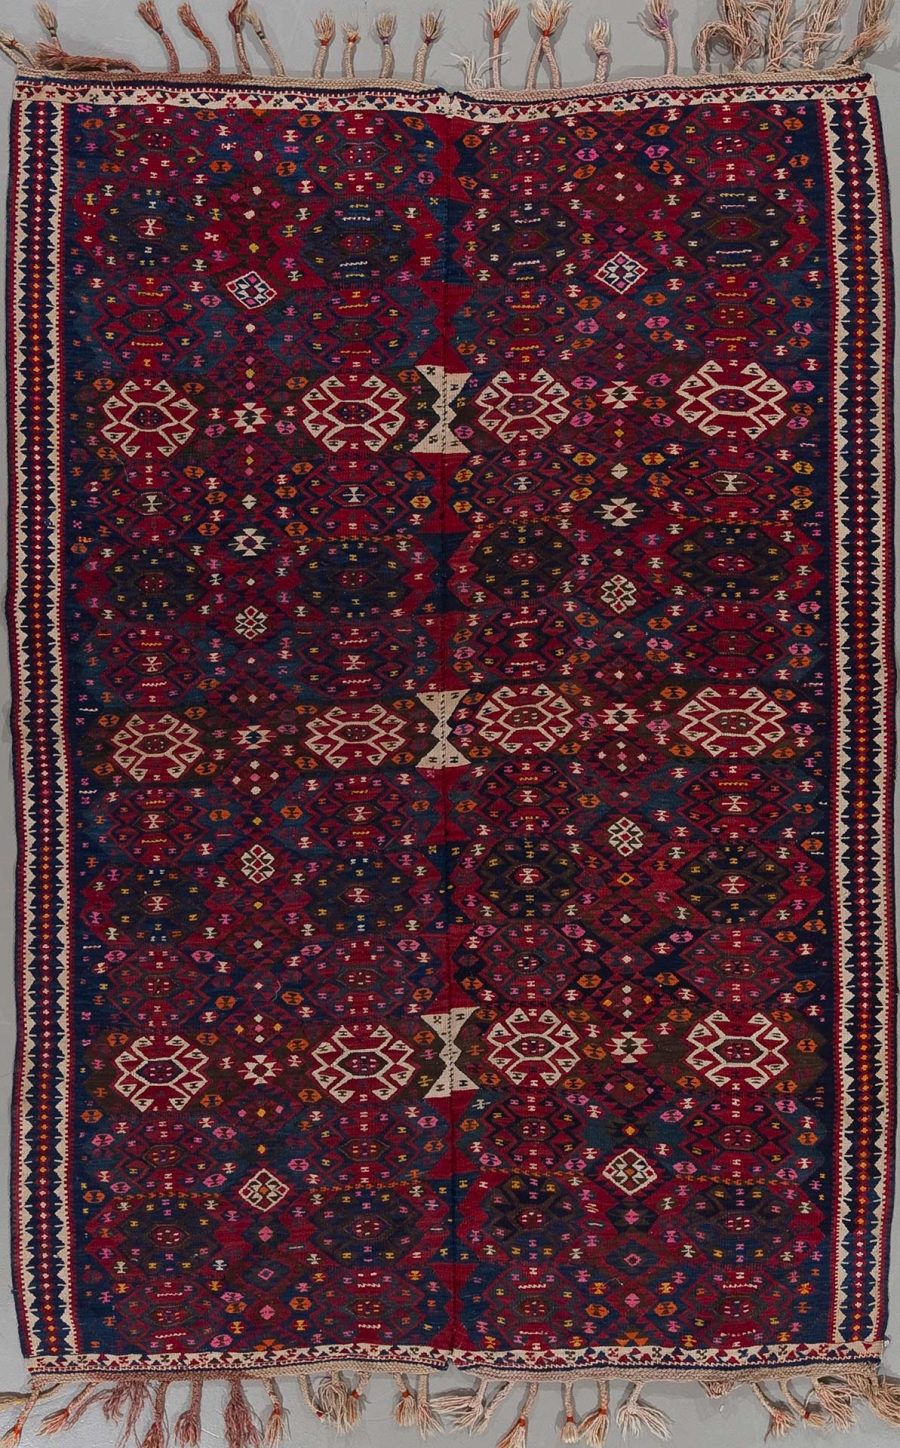 Traditioneller handgeknüpfter Teppich mit komplexem geometrischem Muster und reichen Farben, hauptsächlich in Dunkelblau und Rot, mit Details in Beige, Rosa und anderen Farben, umrahmt von mehreren Bordüren und Fransen an beiden Enden.